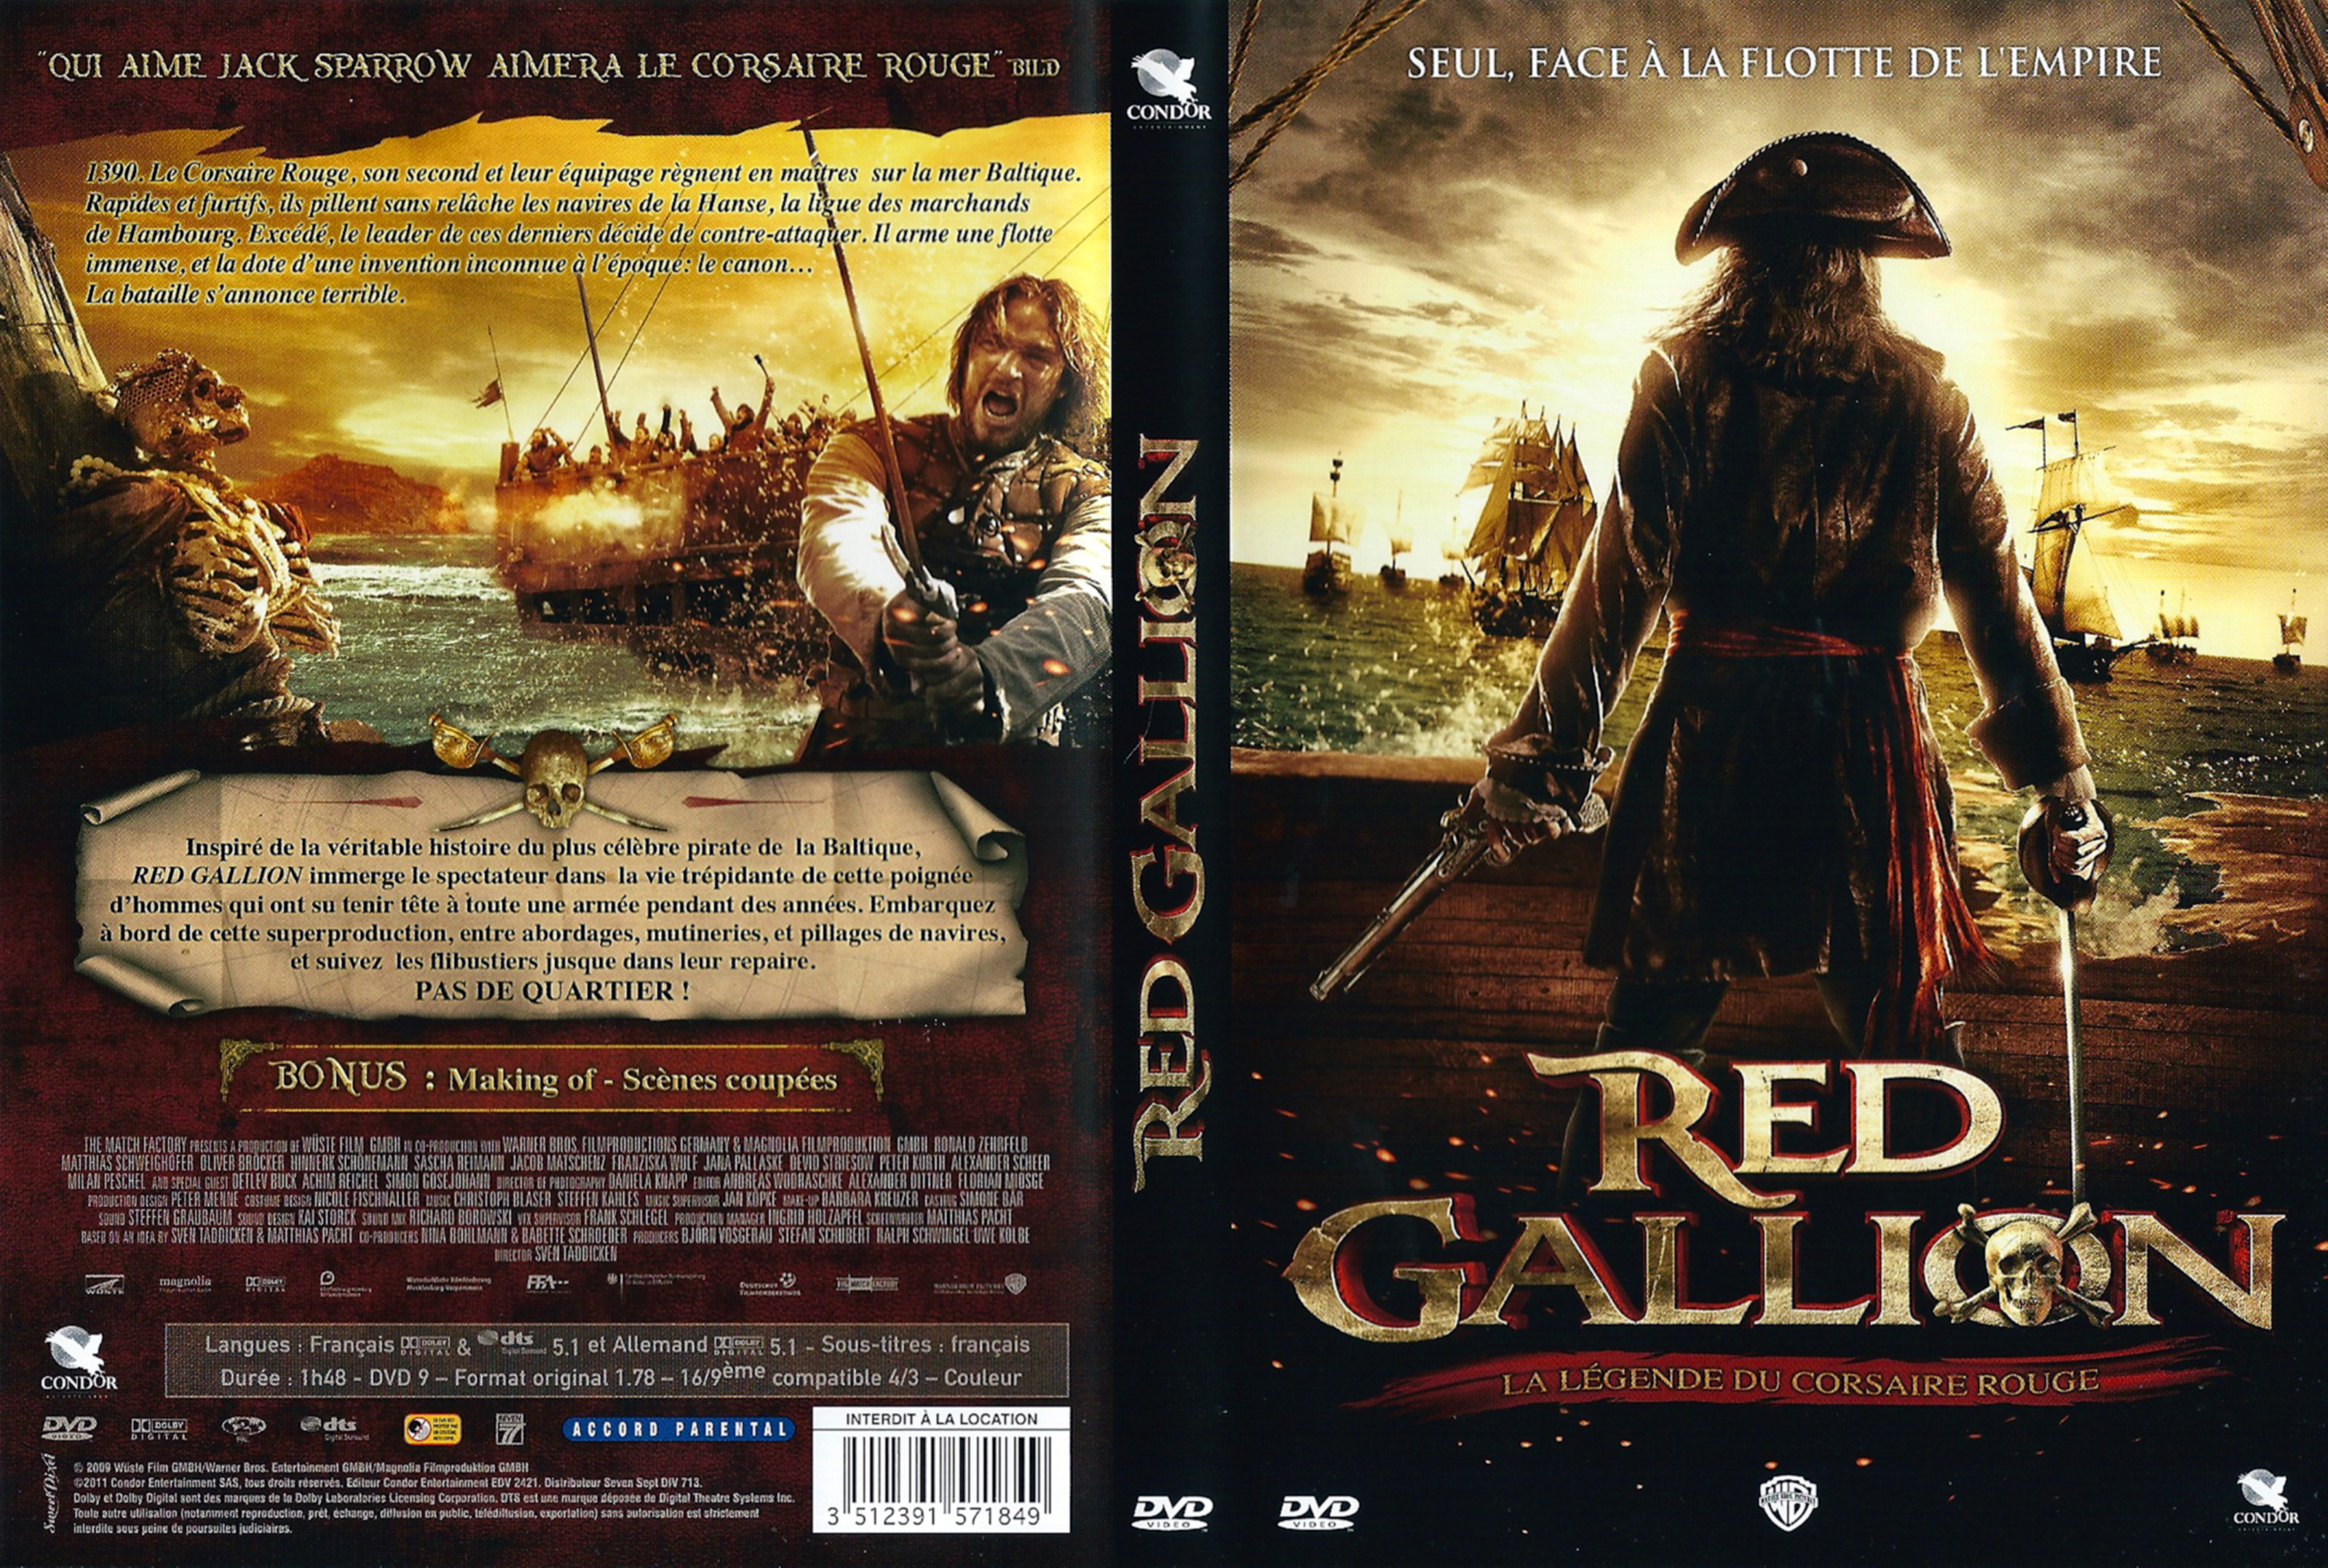 Jaquette DVD Red gallion La lgende du corsaire rouge